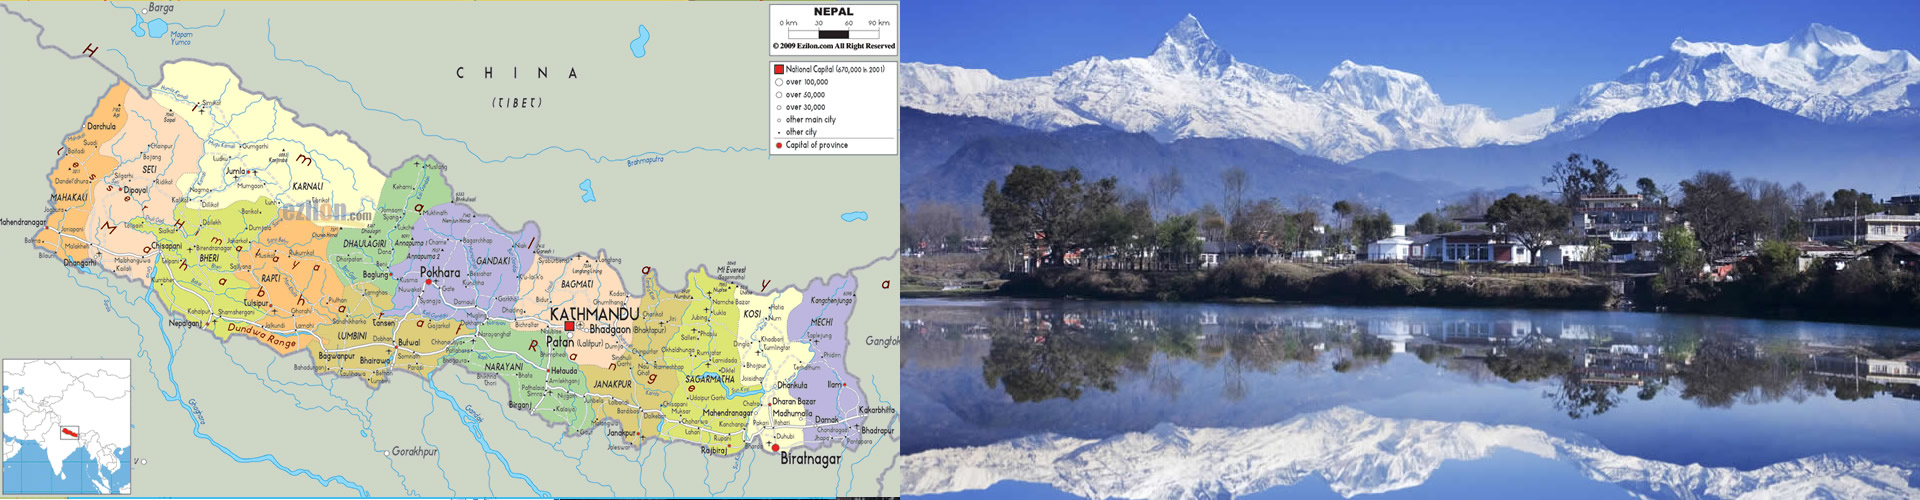 Nepal Ülke Haritası